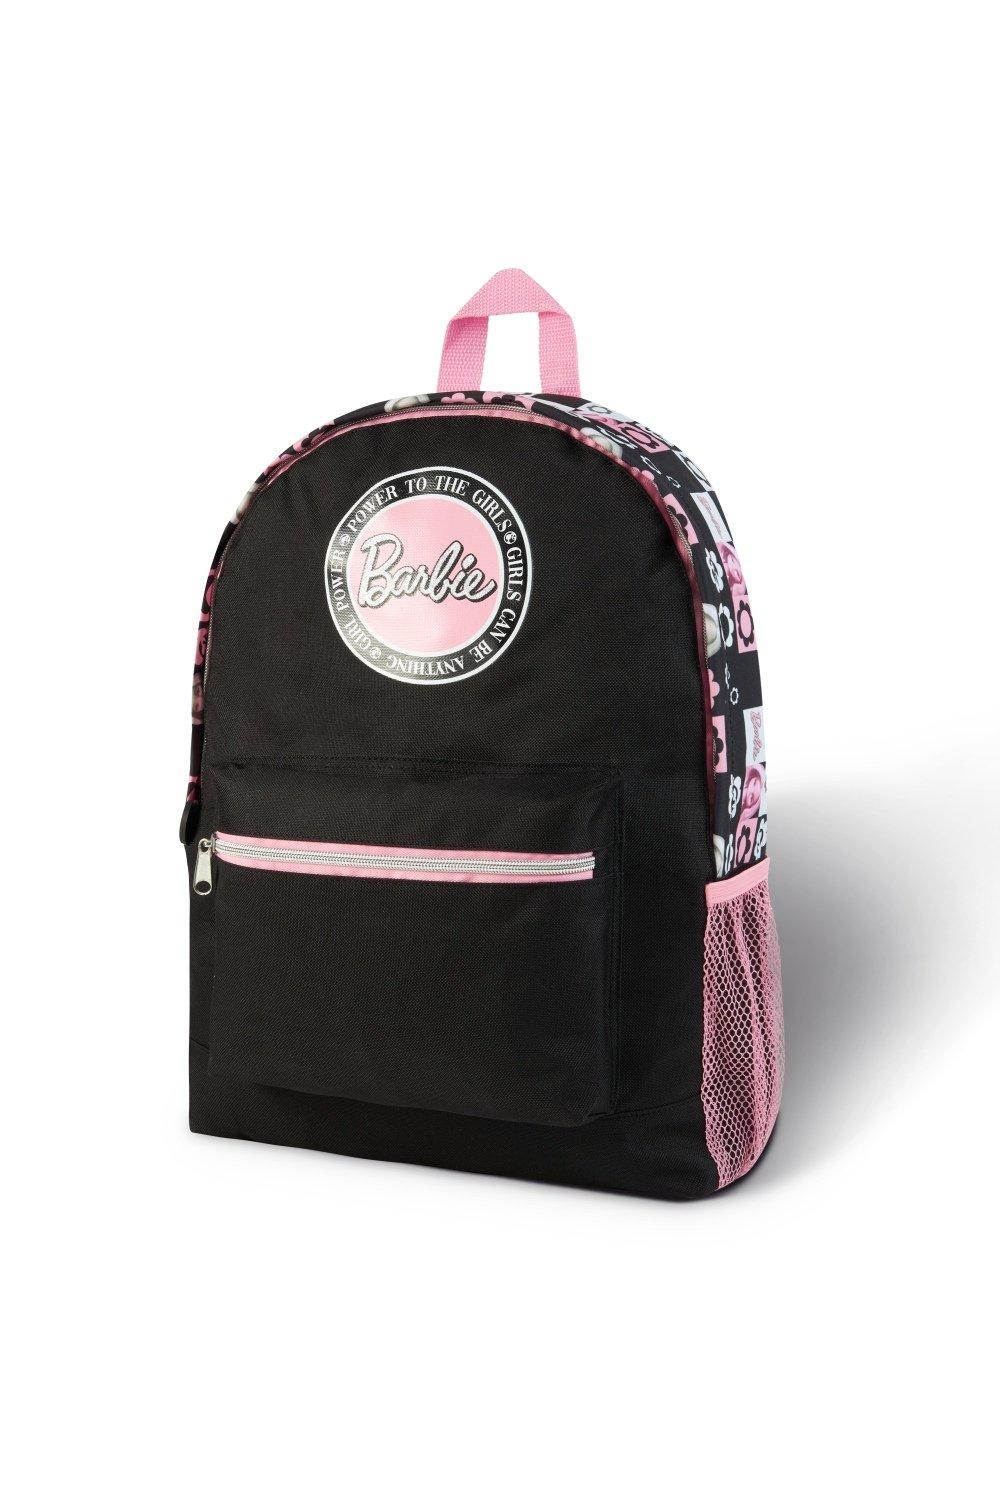 Школьная сумка Barbie, мультиколор женский вельветовый рюкзак вместительный рюкзак дорожный рюкзак для книг школьный рюкзак для девочек подростков